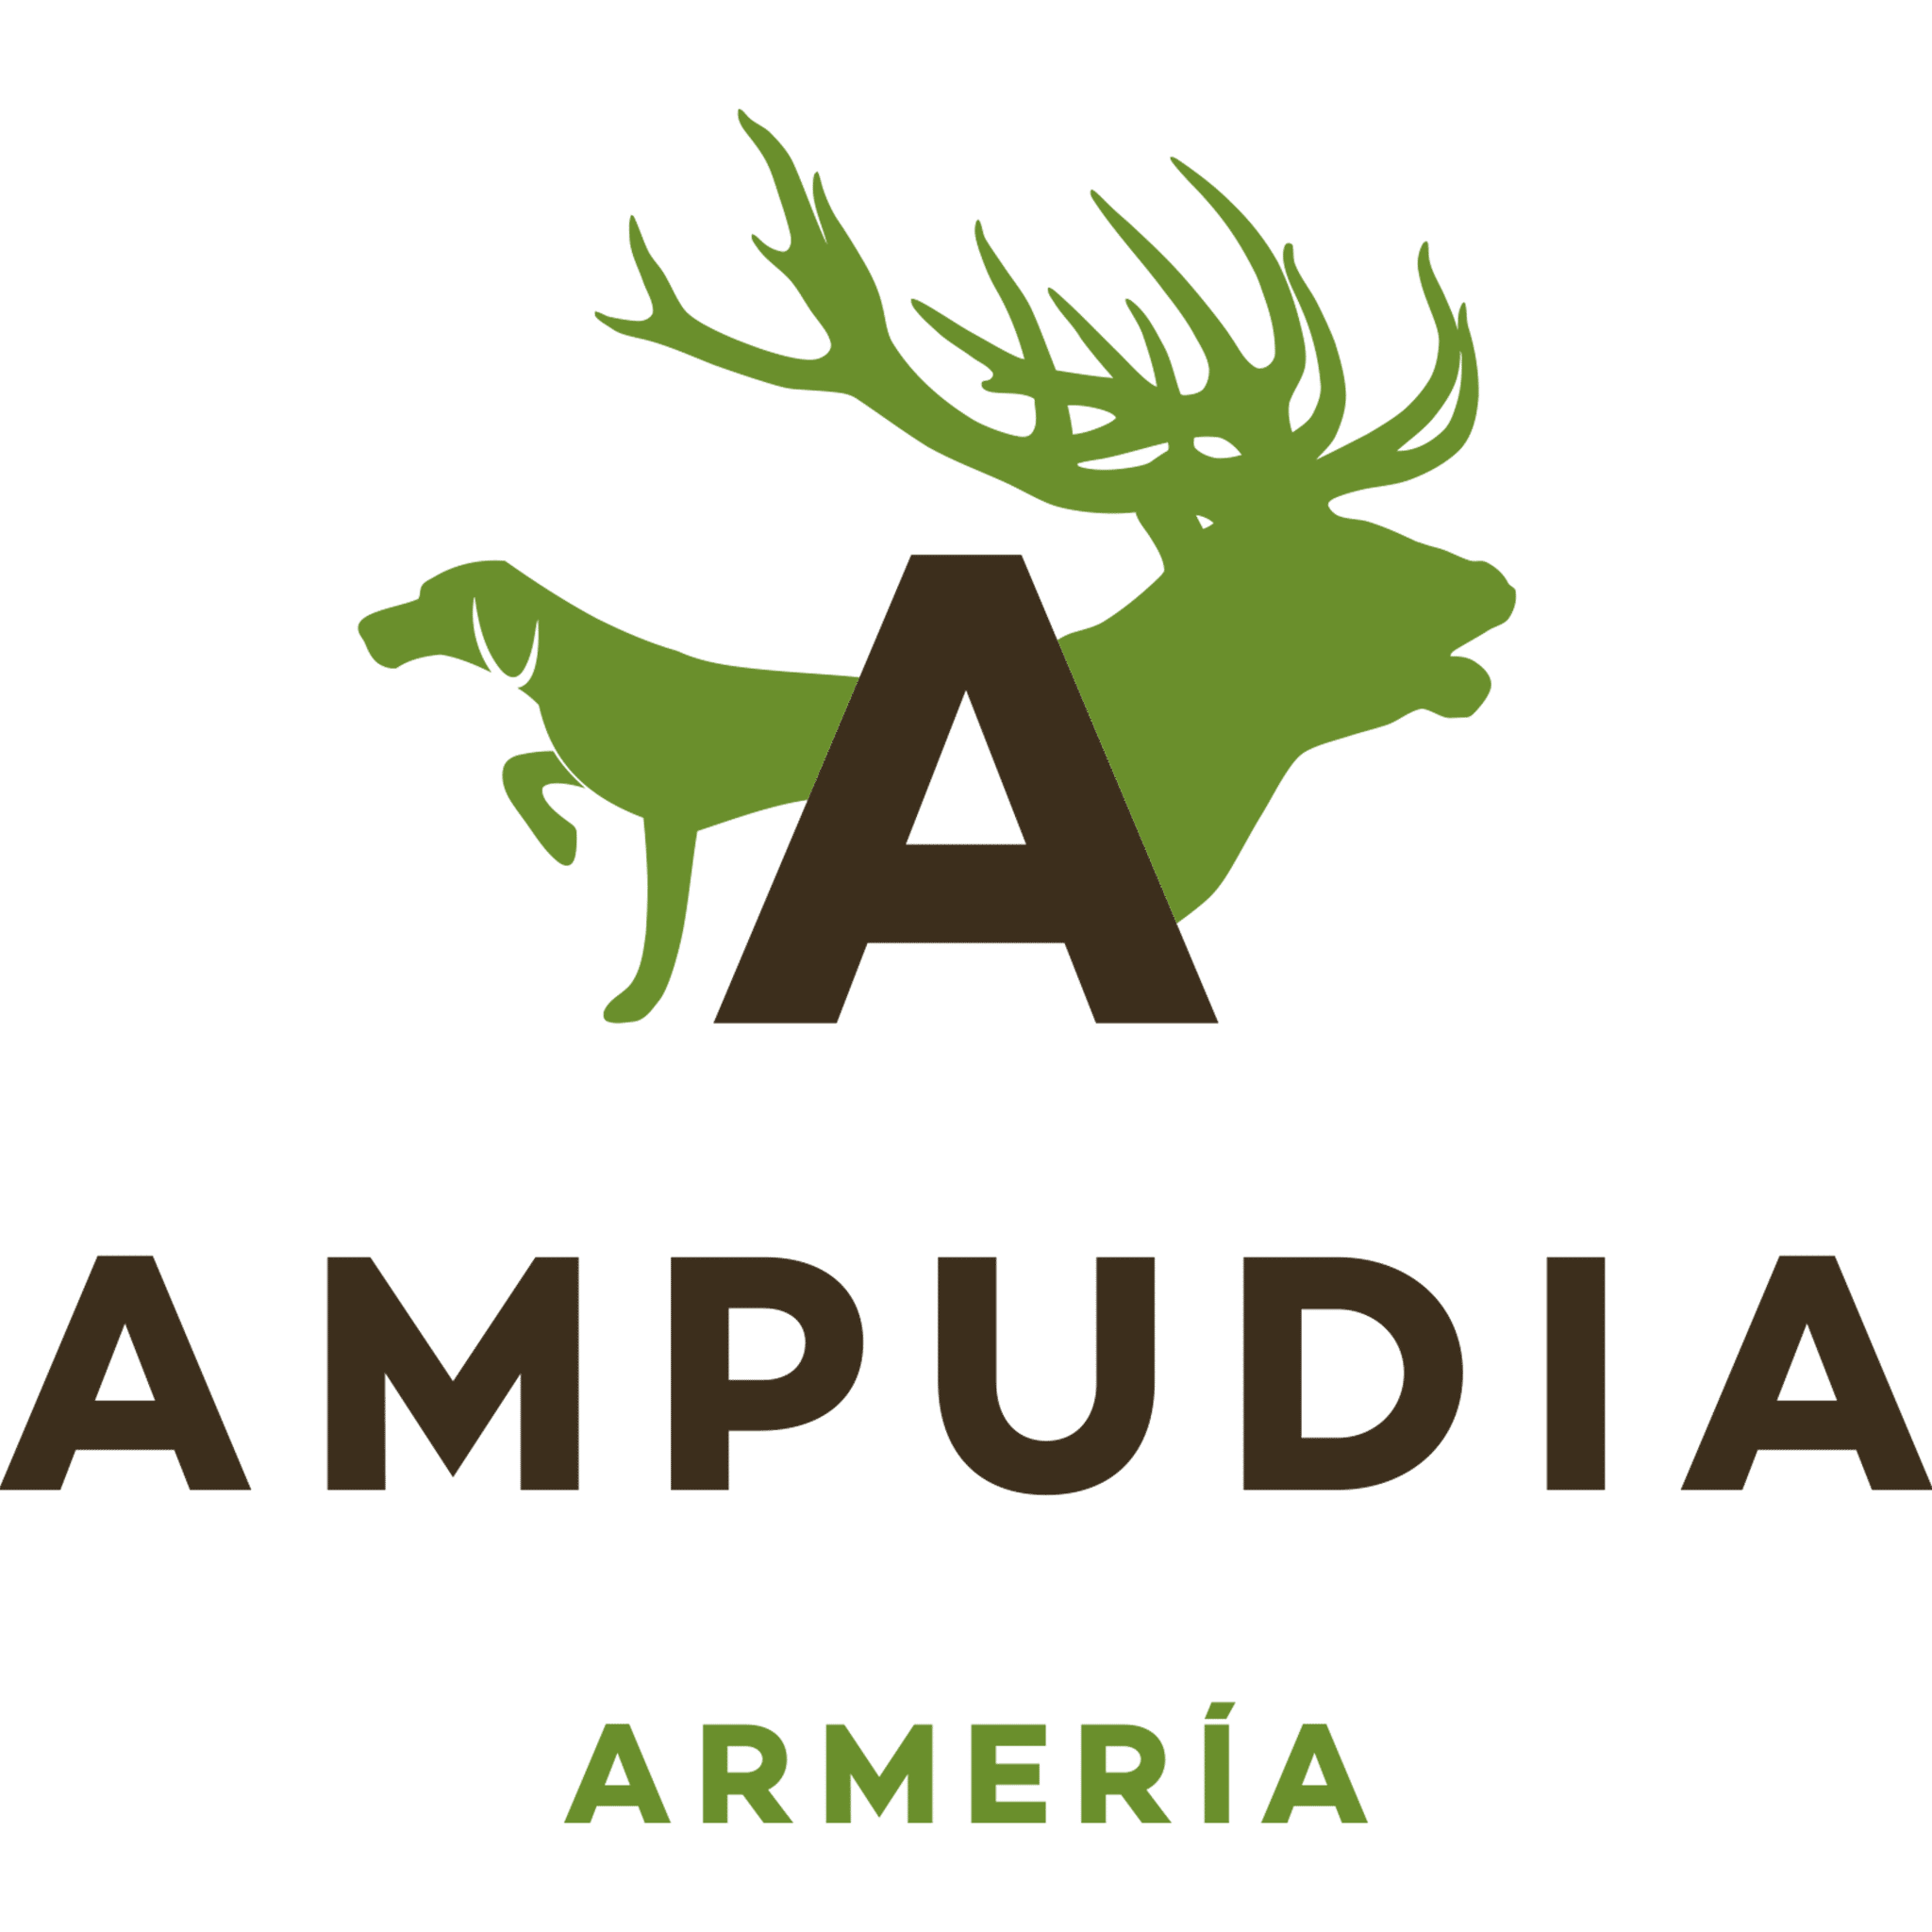 logo armeria ampudia